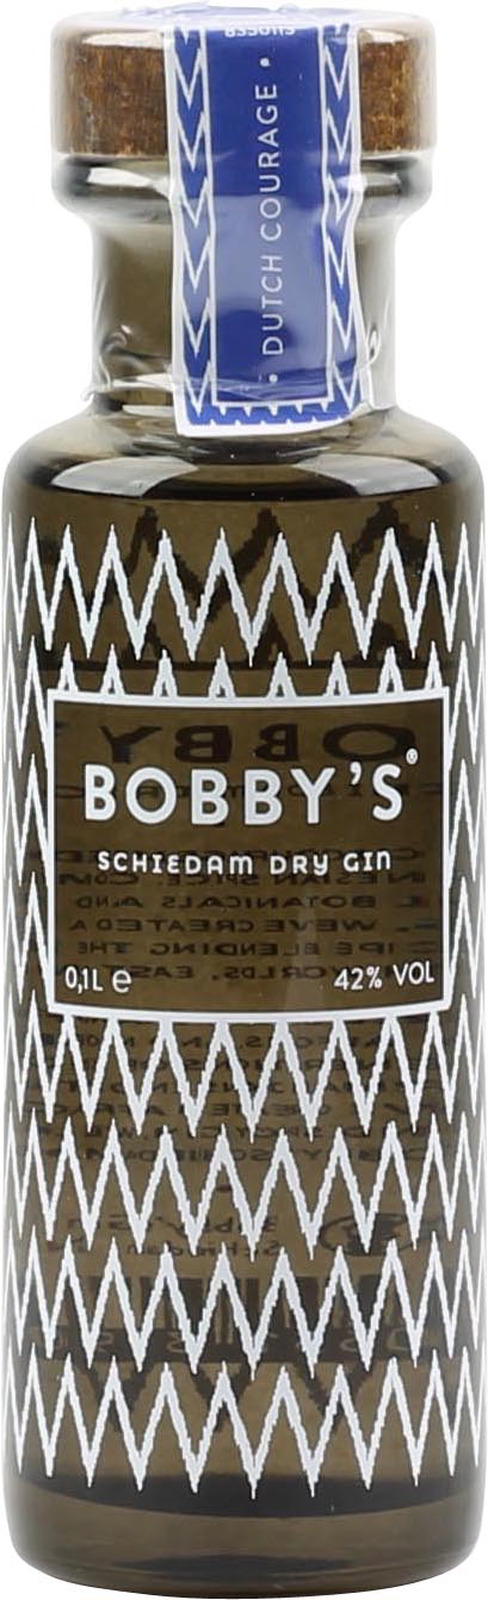 Bobbys Gin Mini 0,1 Liter 42 % Vol., zum Probieren